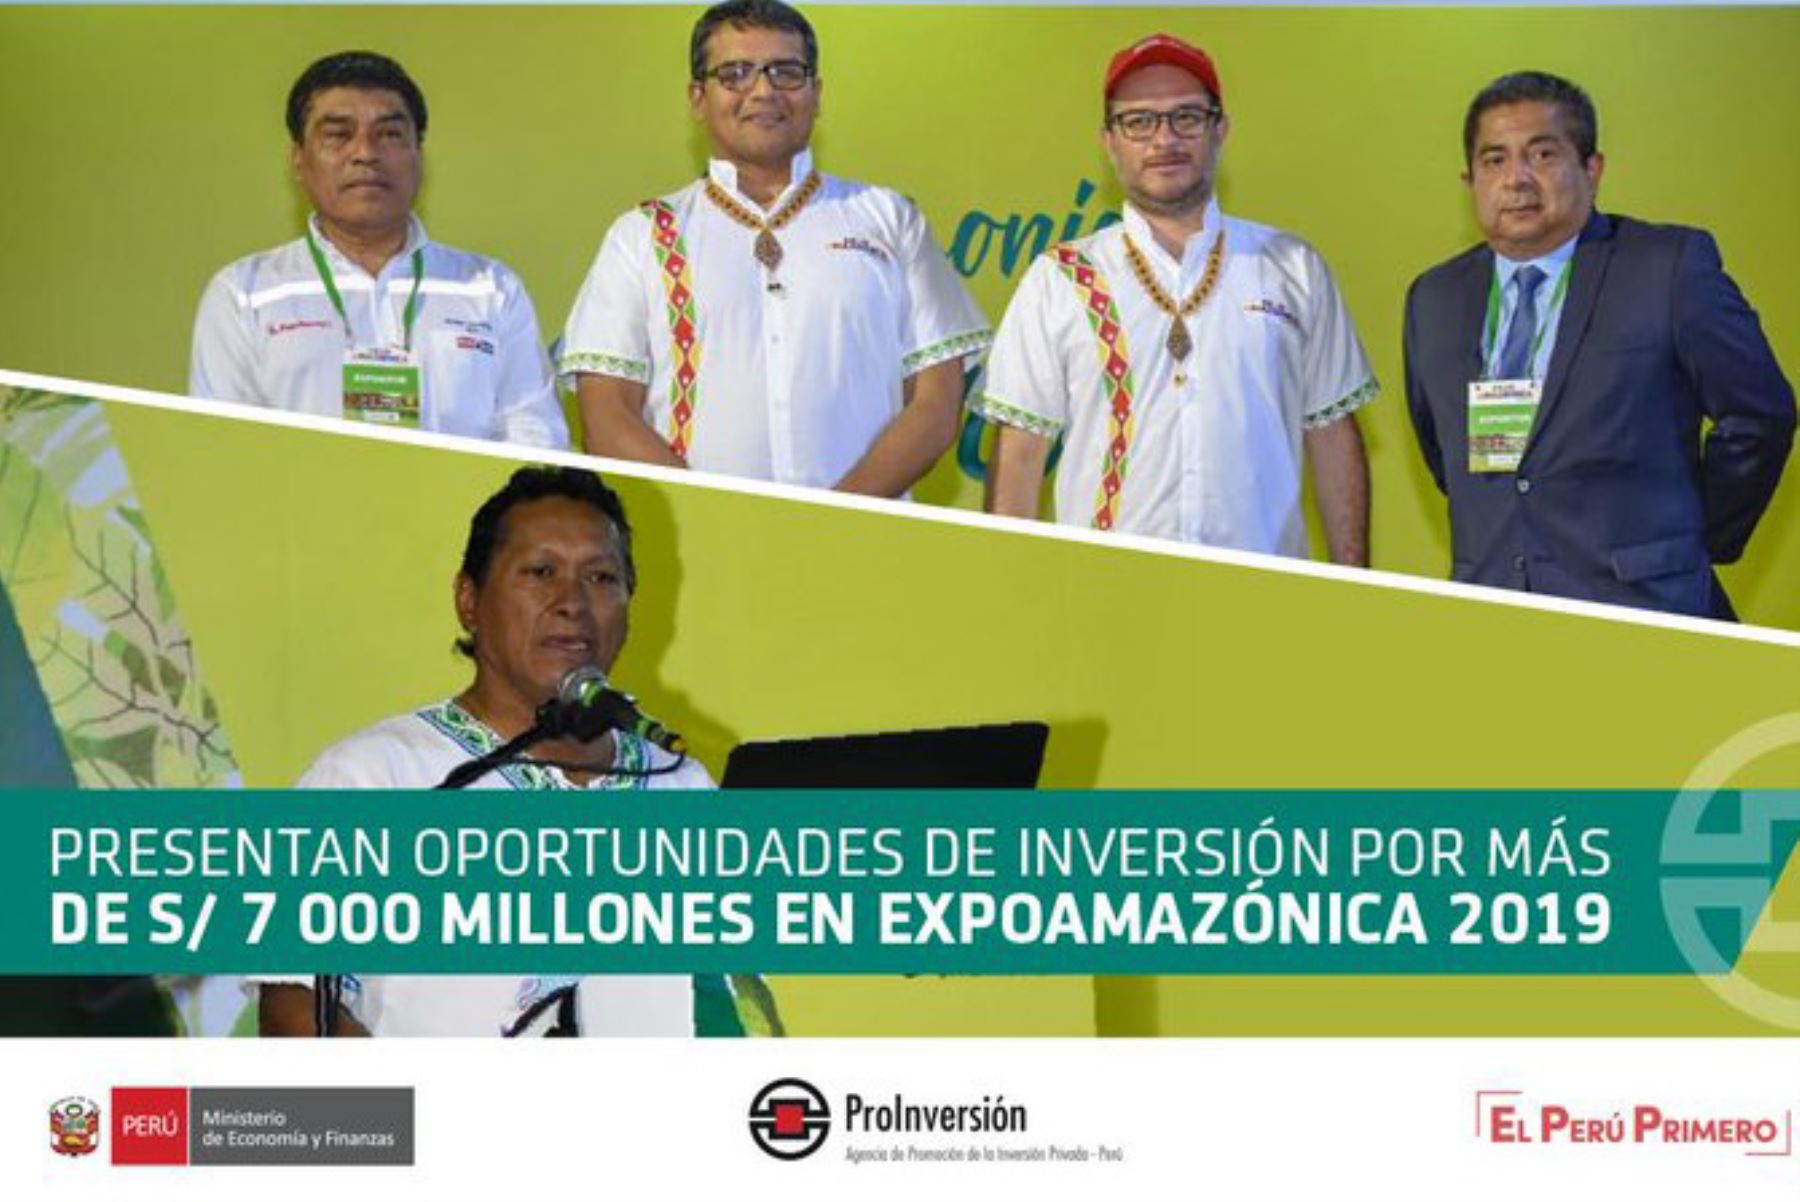 En el foro “Amazonía invierte” organizado por ProInversión y el Gobierno Regional de Loreto, se presentaron oportunidades de inversión por 7,000 millones de soles en las regiones amazónicas.